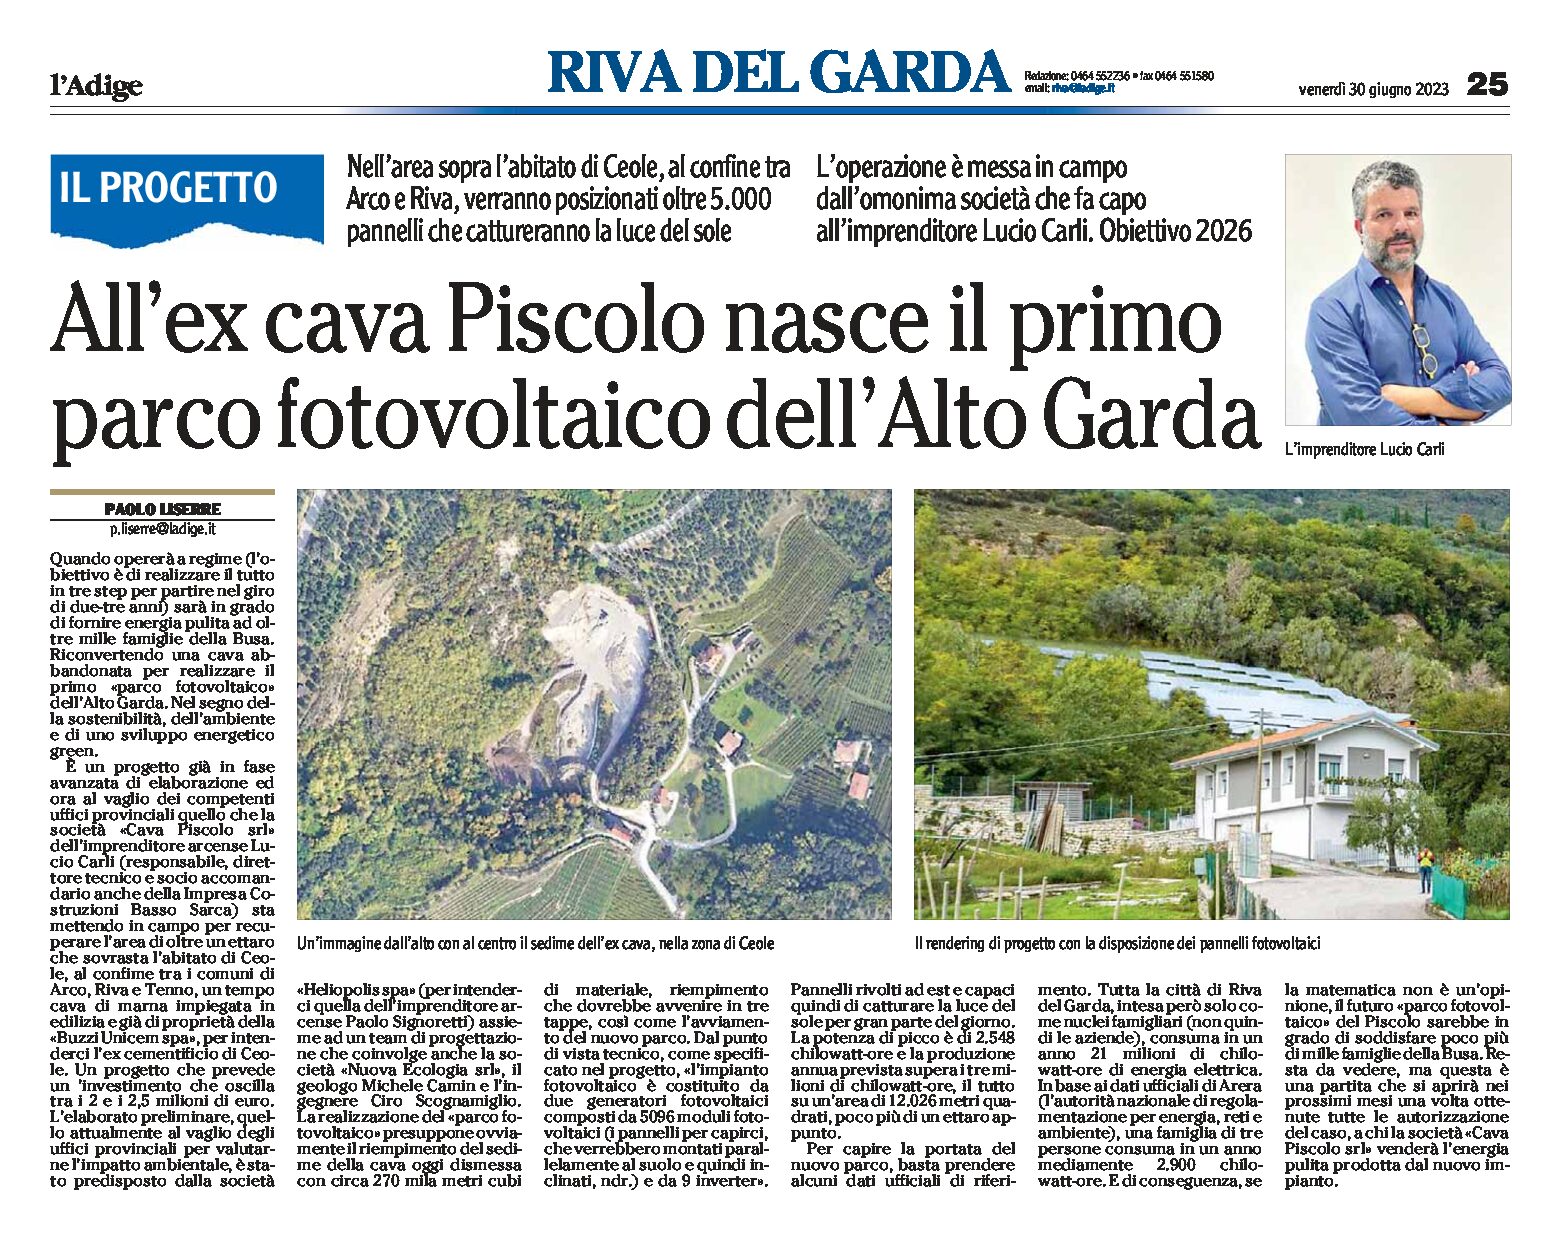 Tra Arco e Riva: all’ex cava Piscolo nasce il primo parco fotovoltaico dell’Alto Garda